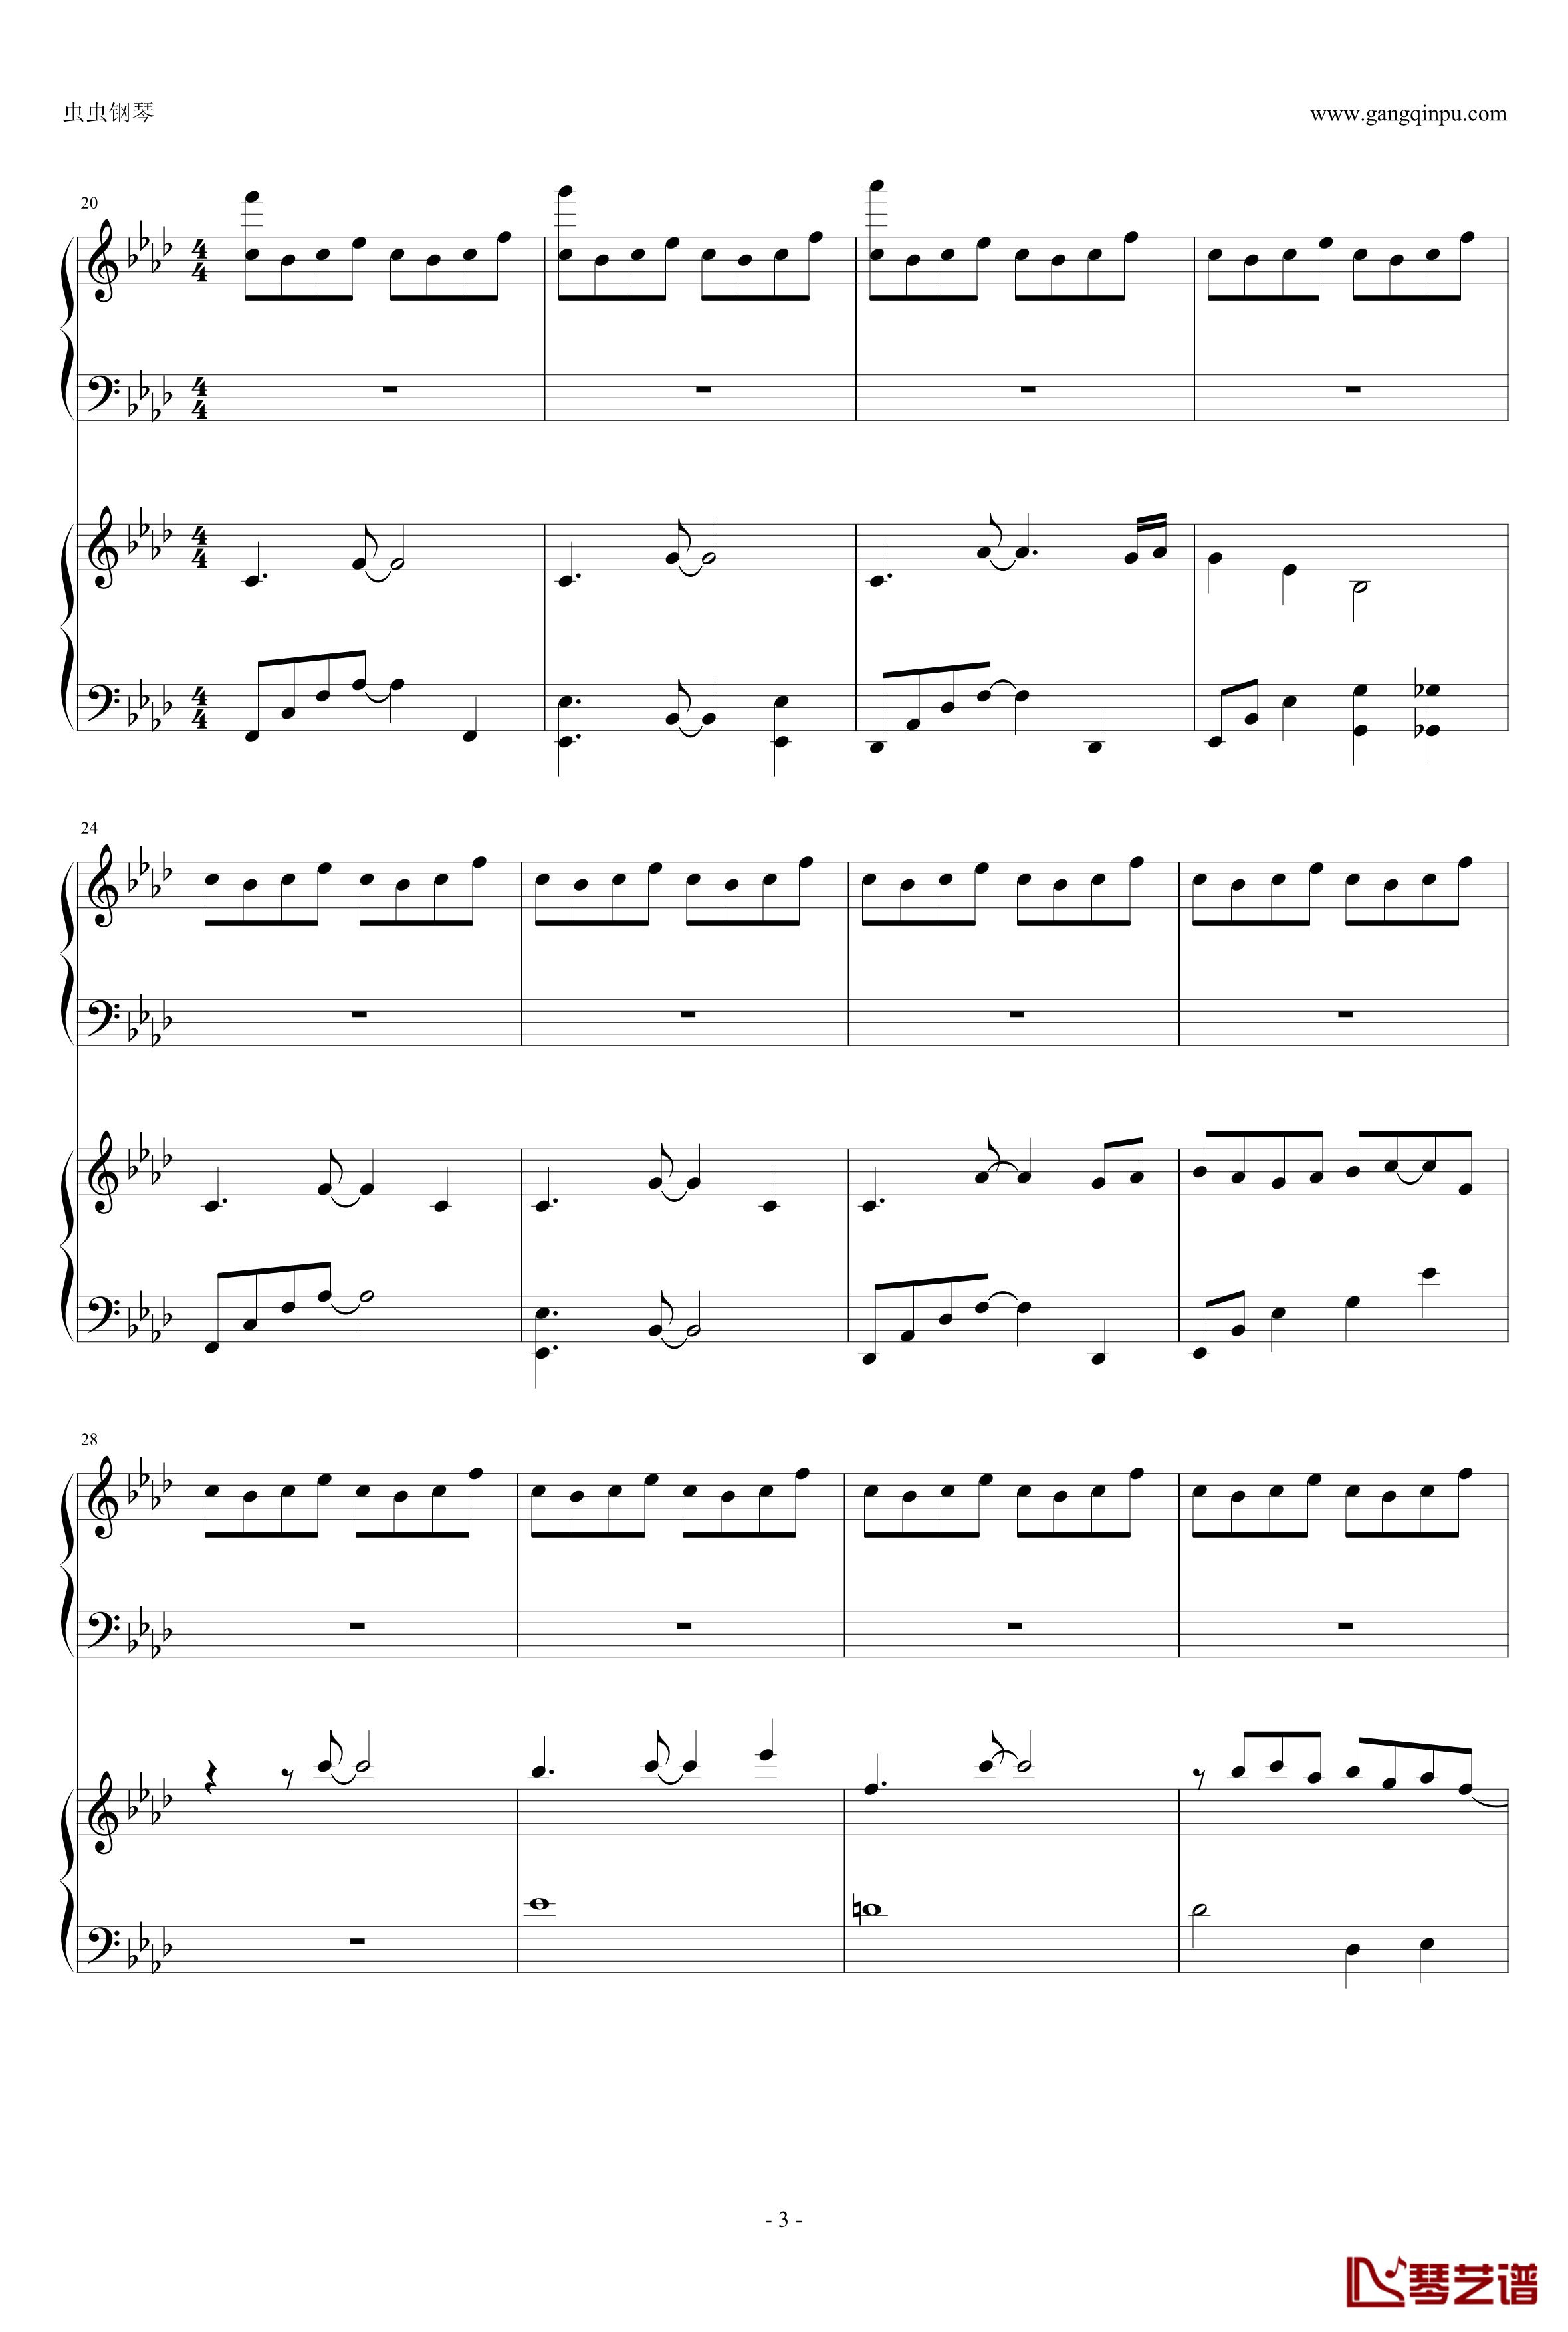 東方連奏曲II Pianoforte钢琴谱-第一部分-东方project3